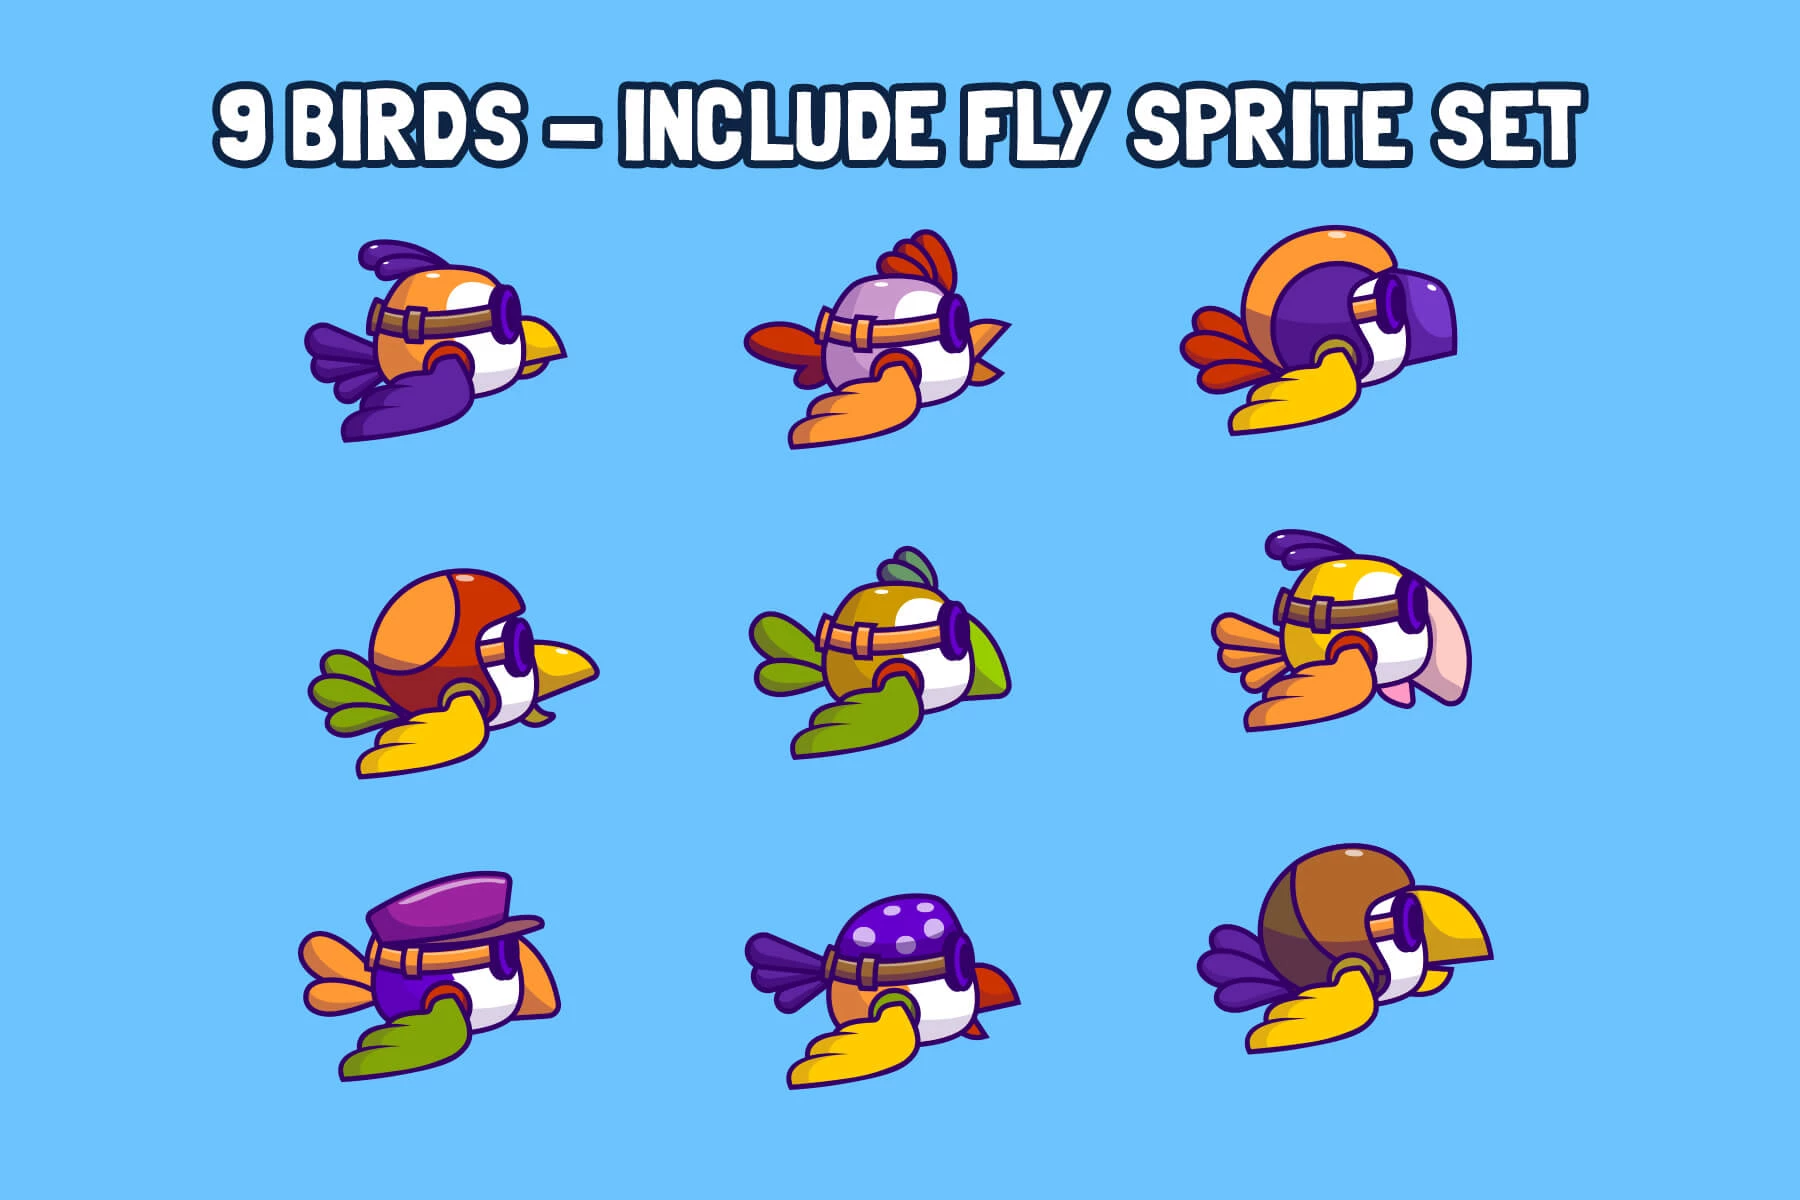 Hipster Bird, flappy Bird Blue, Flappy Bird, sprite, video games